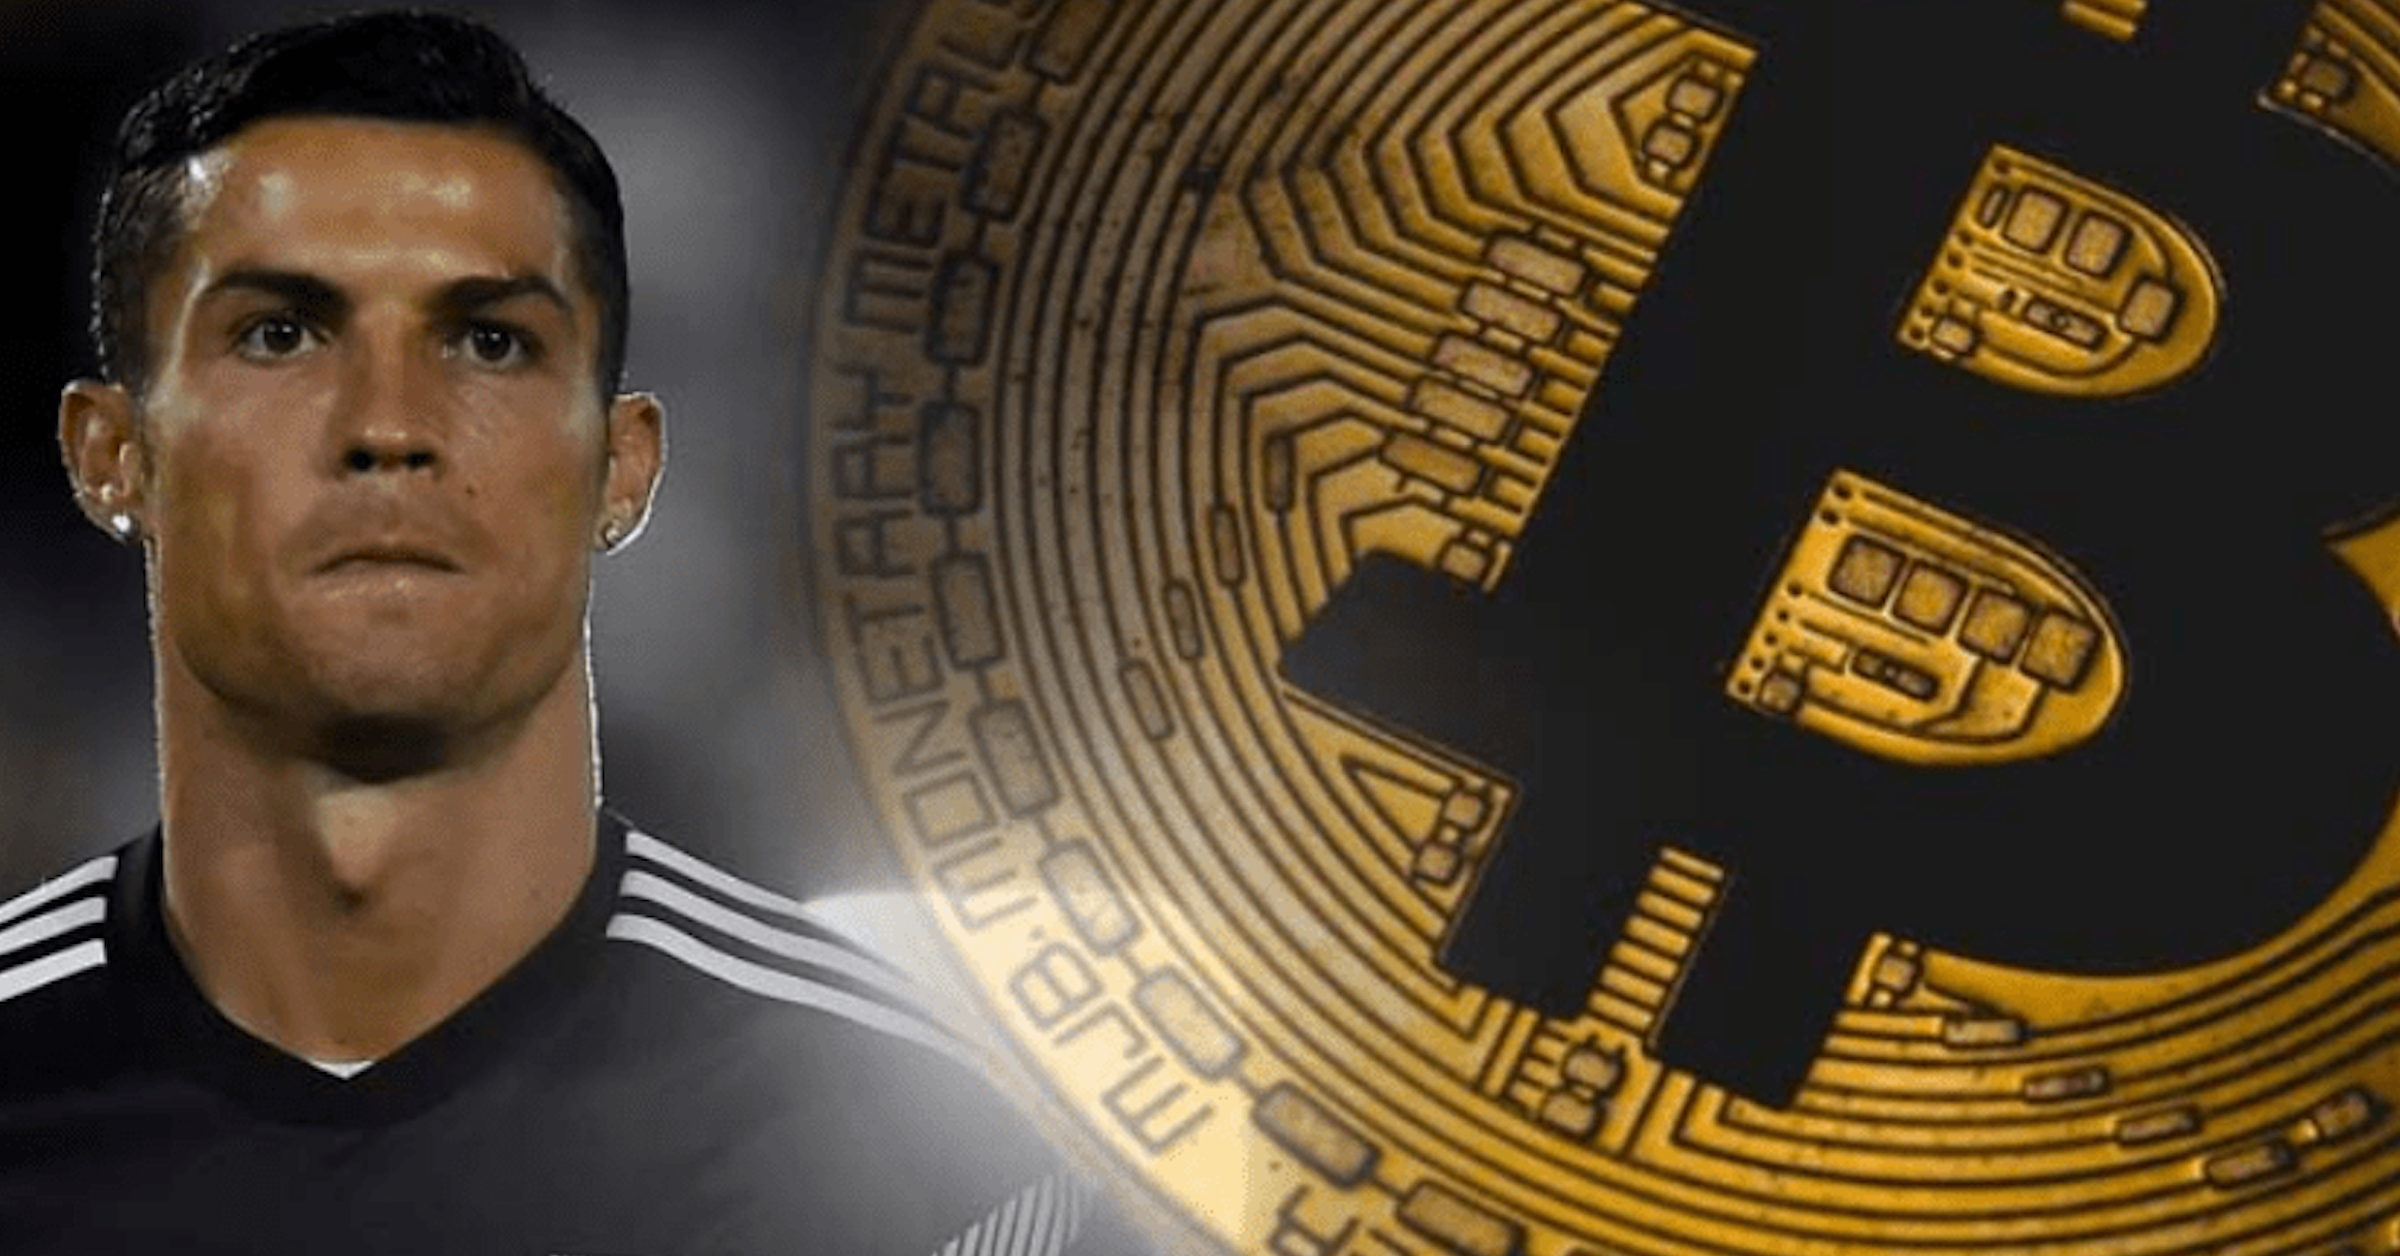 Scam Bitcoin giả mạo Cristiano Ronaldo hòng lôi kéo nhà đầu tư nai tơ